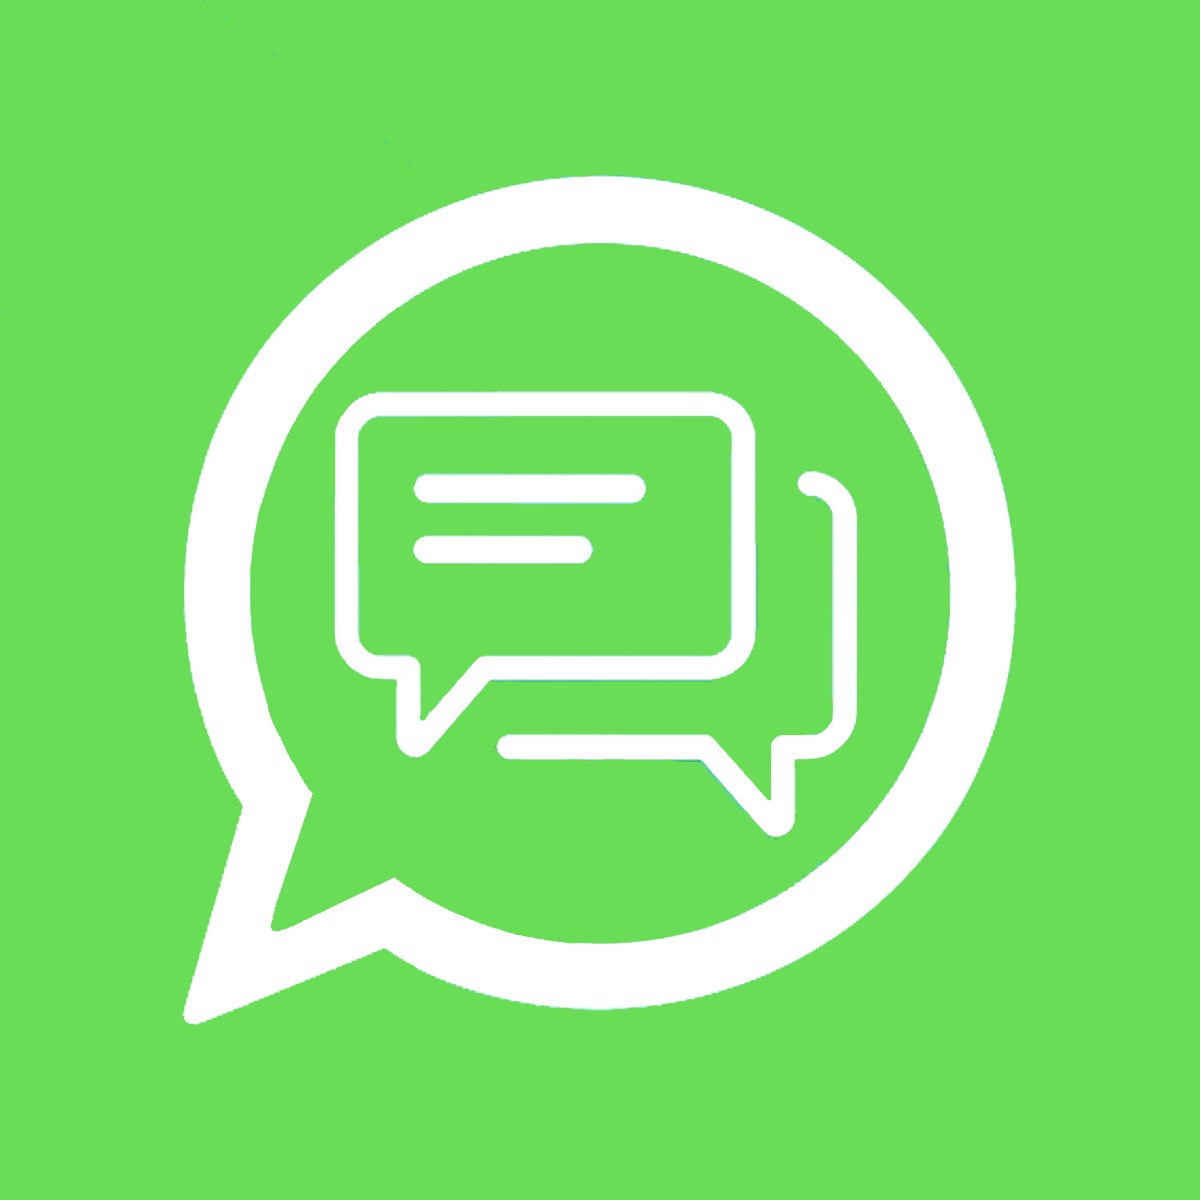 Shopify WhatsApp app by Inovapps